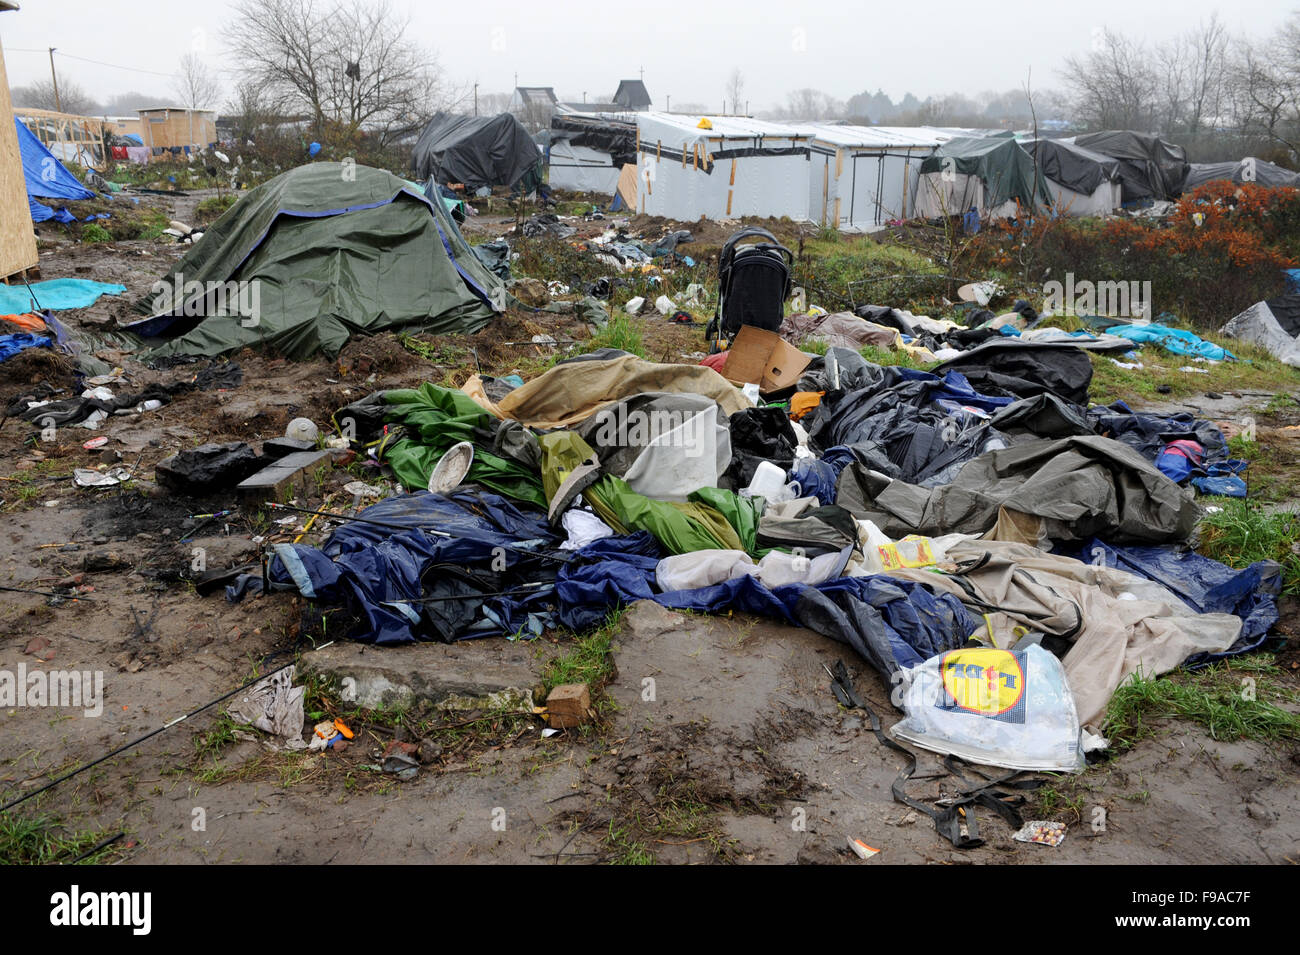 CALAIS, FRANCE. Le 13 décembre 2015. Des tentes de fortune et les structures dans la 'jungle' camp de réfugiés à Calais par une matinée pluvieuse. Banque D'Images